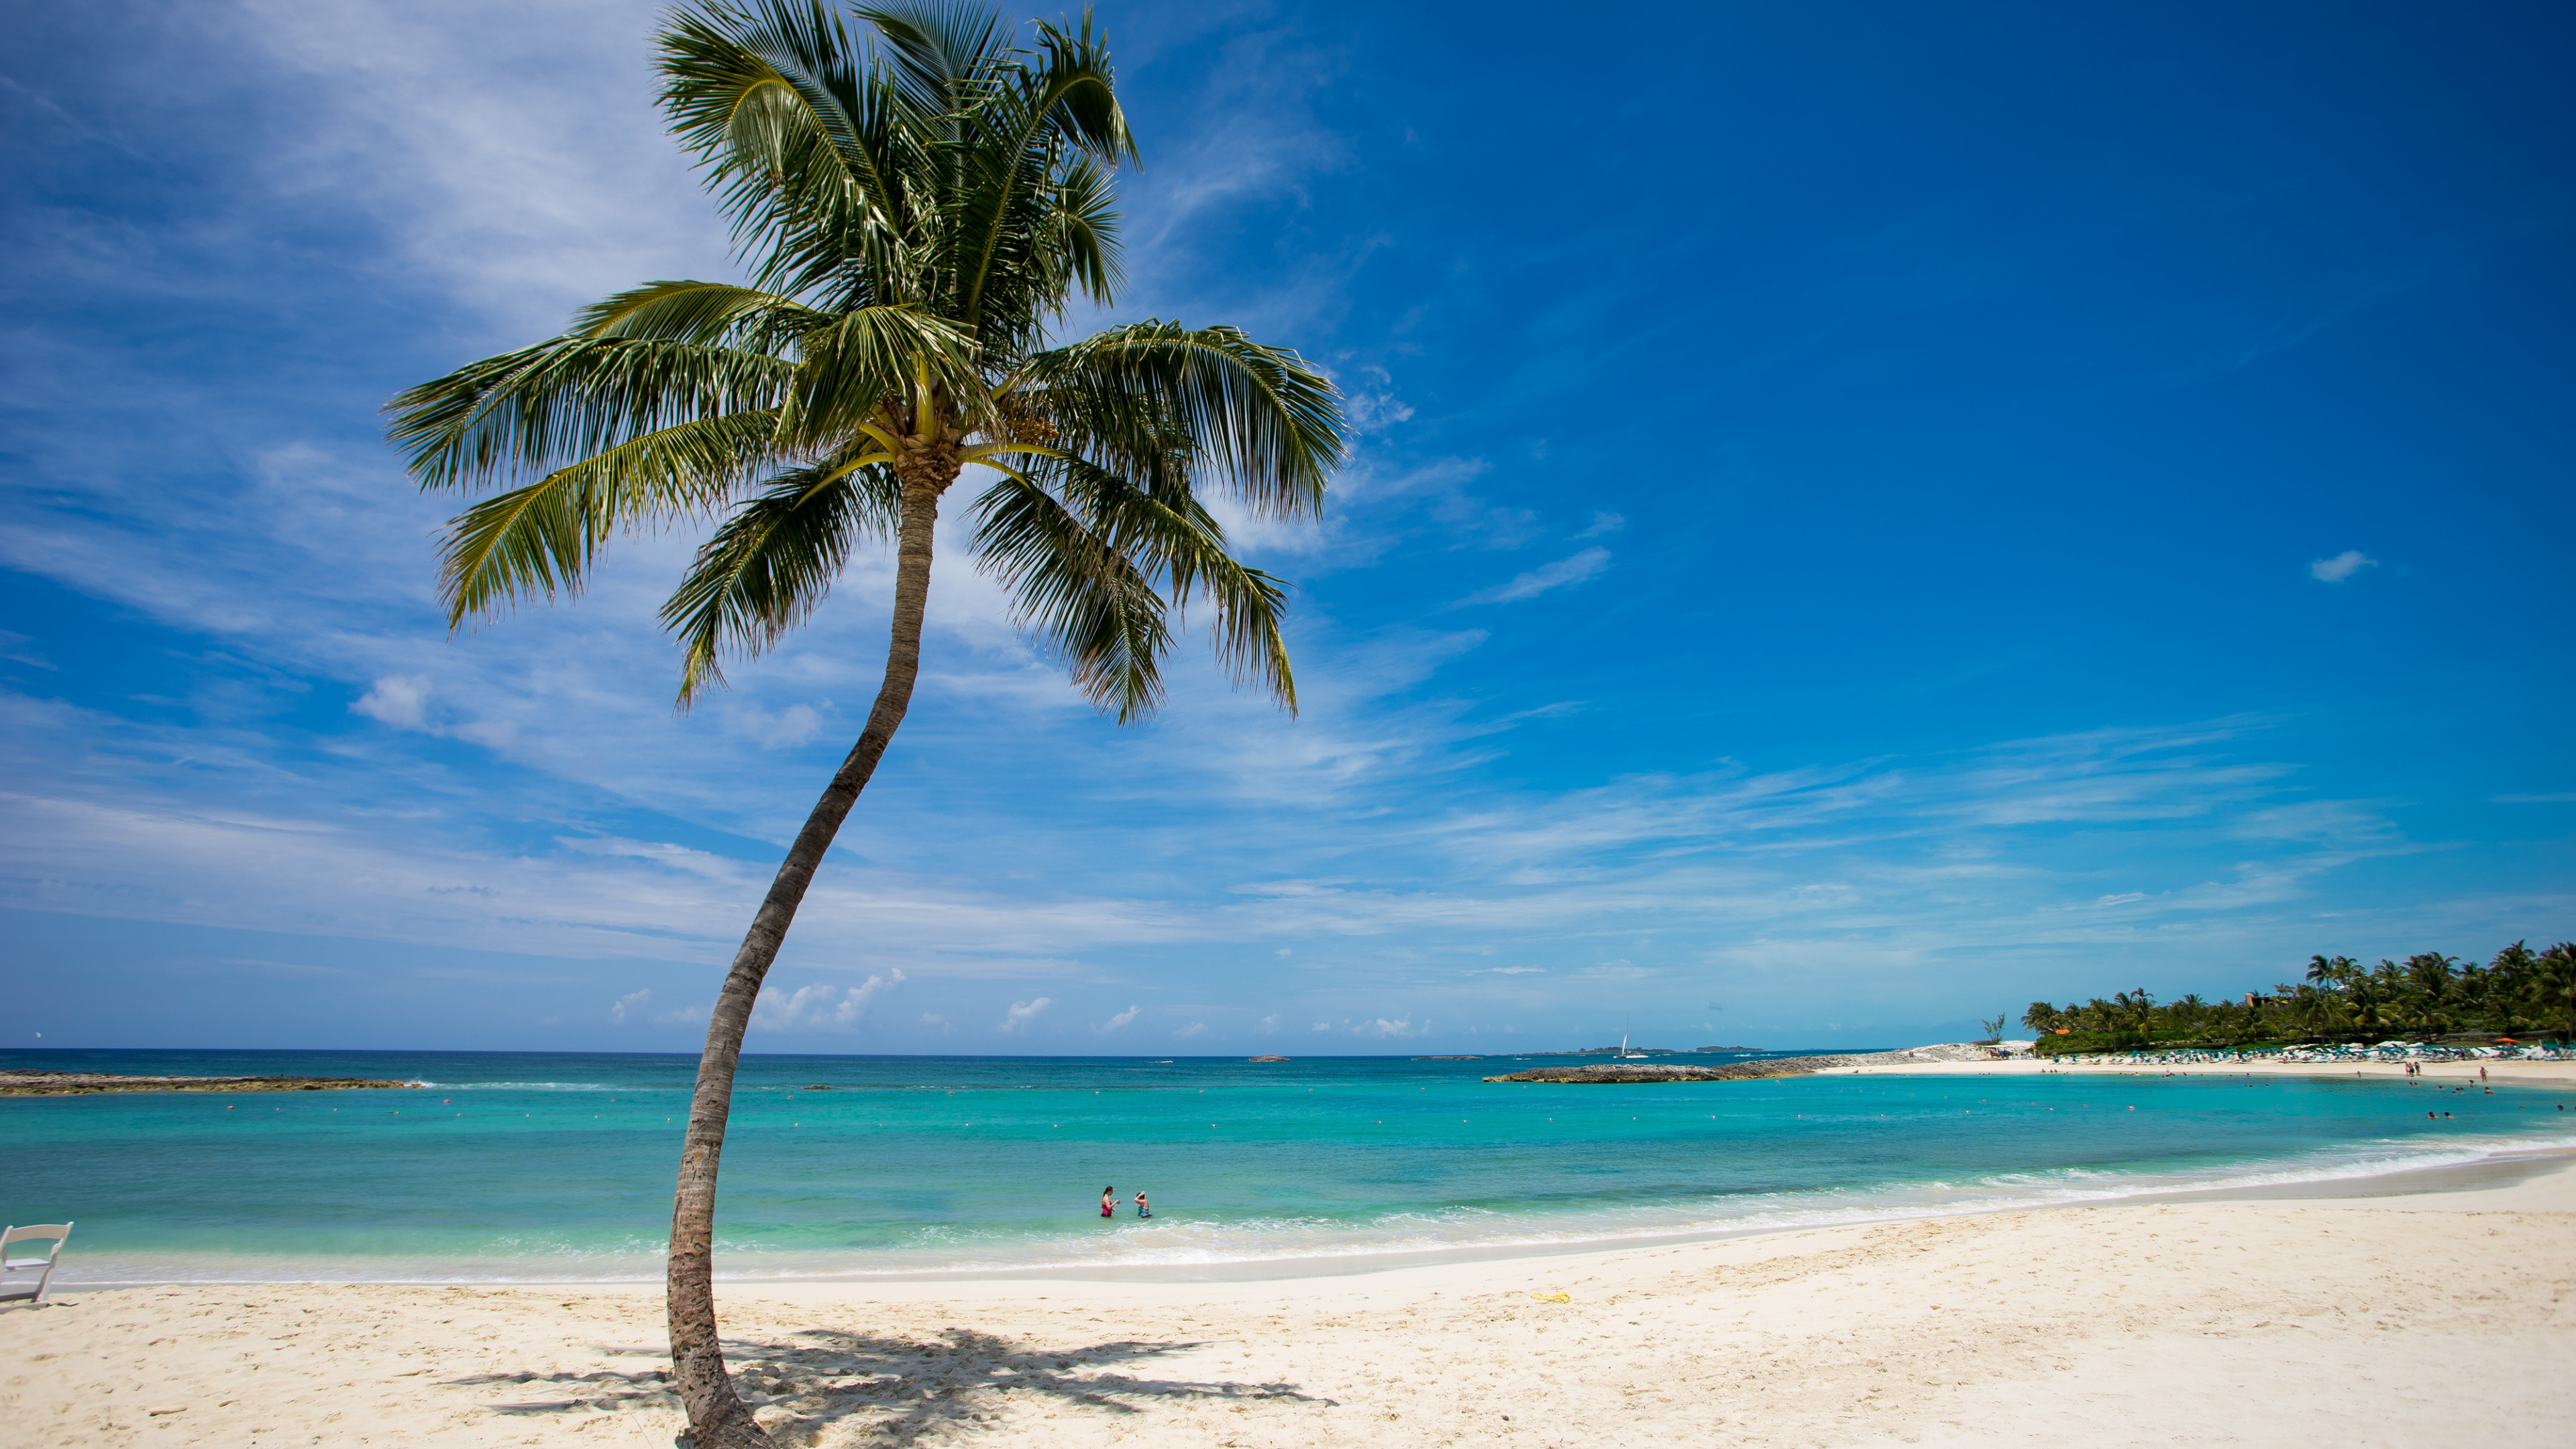 棕榈树, 大海, 热带地区, 加勒比, 岸边 壁纸 3840x2160 允许